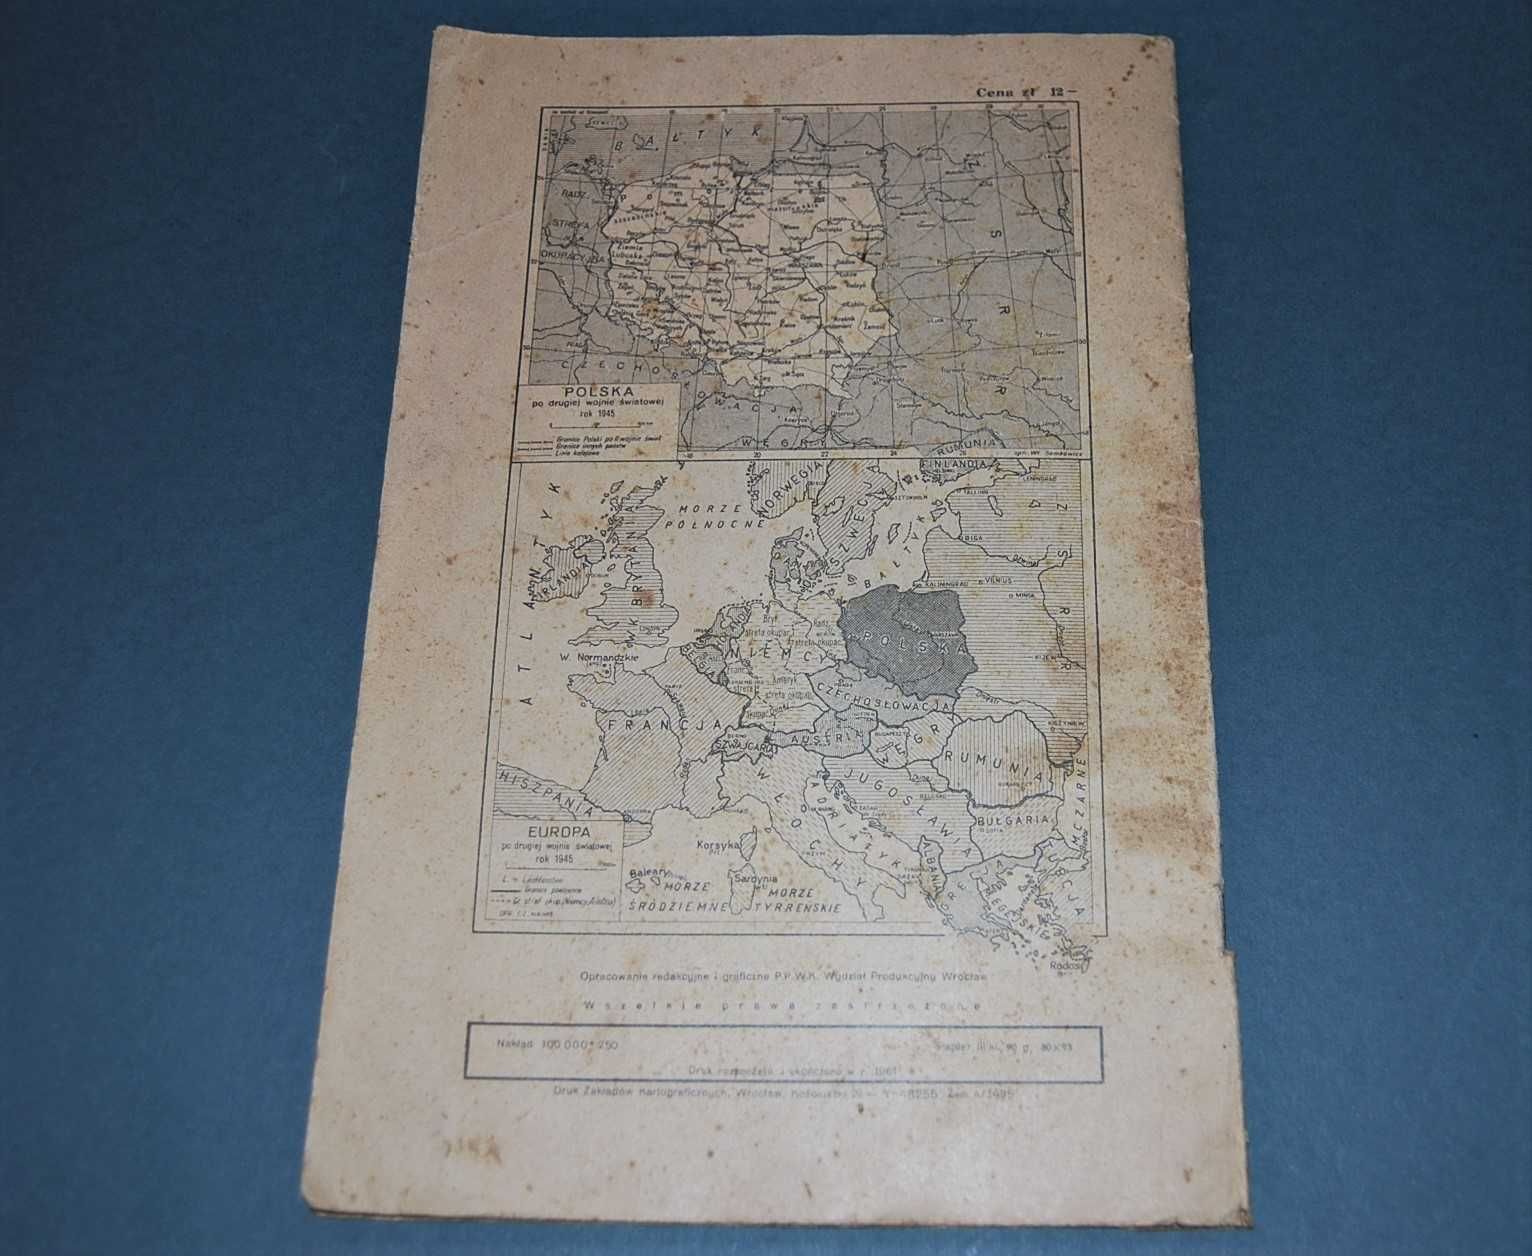 Mały Atlas Historyczny Wyd 1962r Starocia